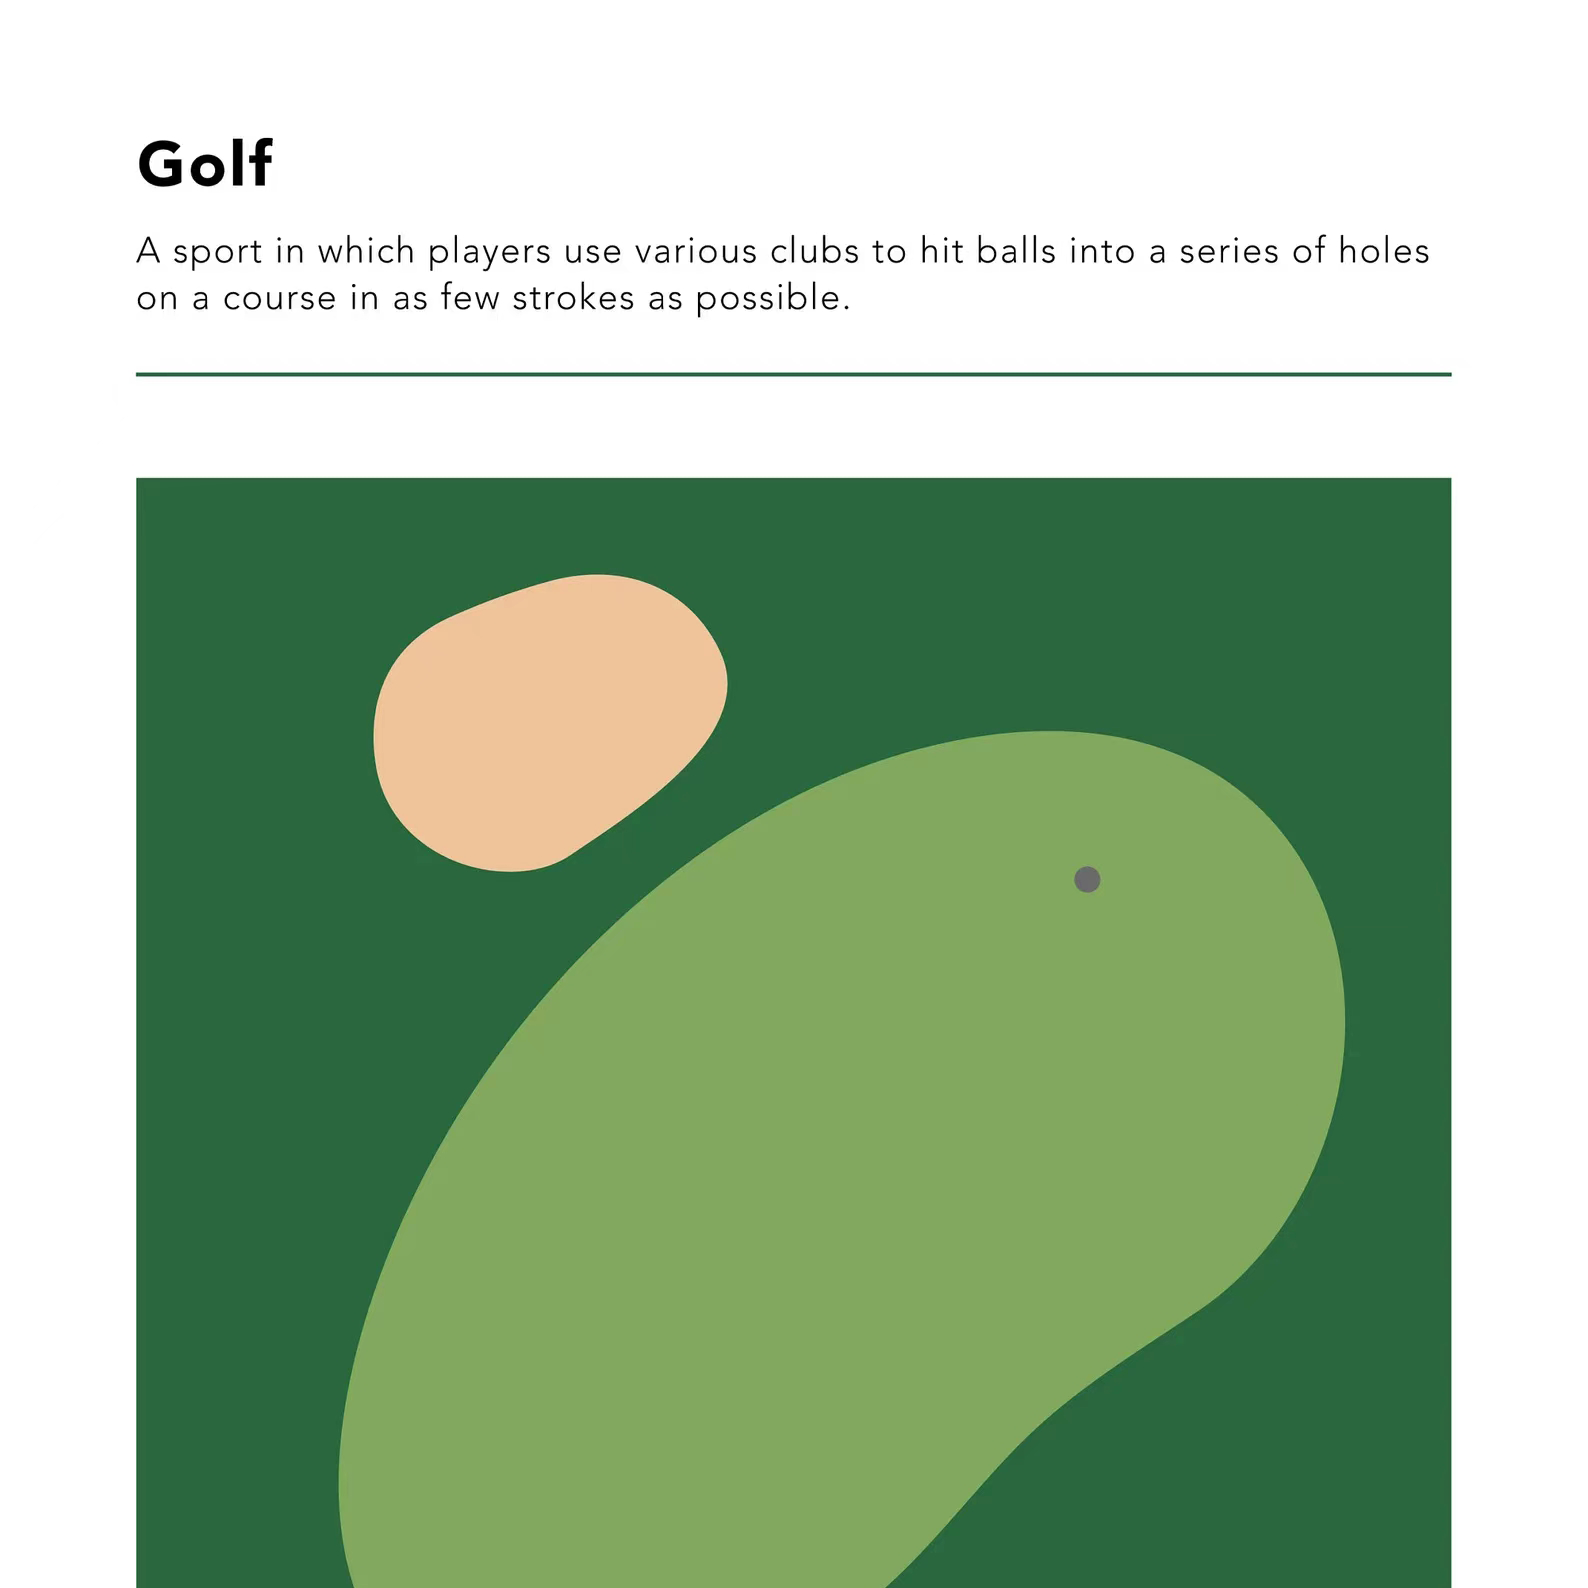 高尔夫的历史和发展